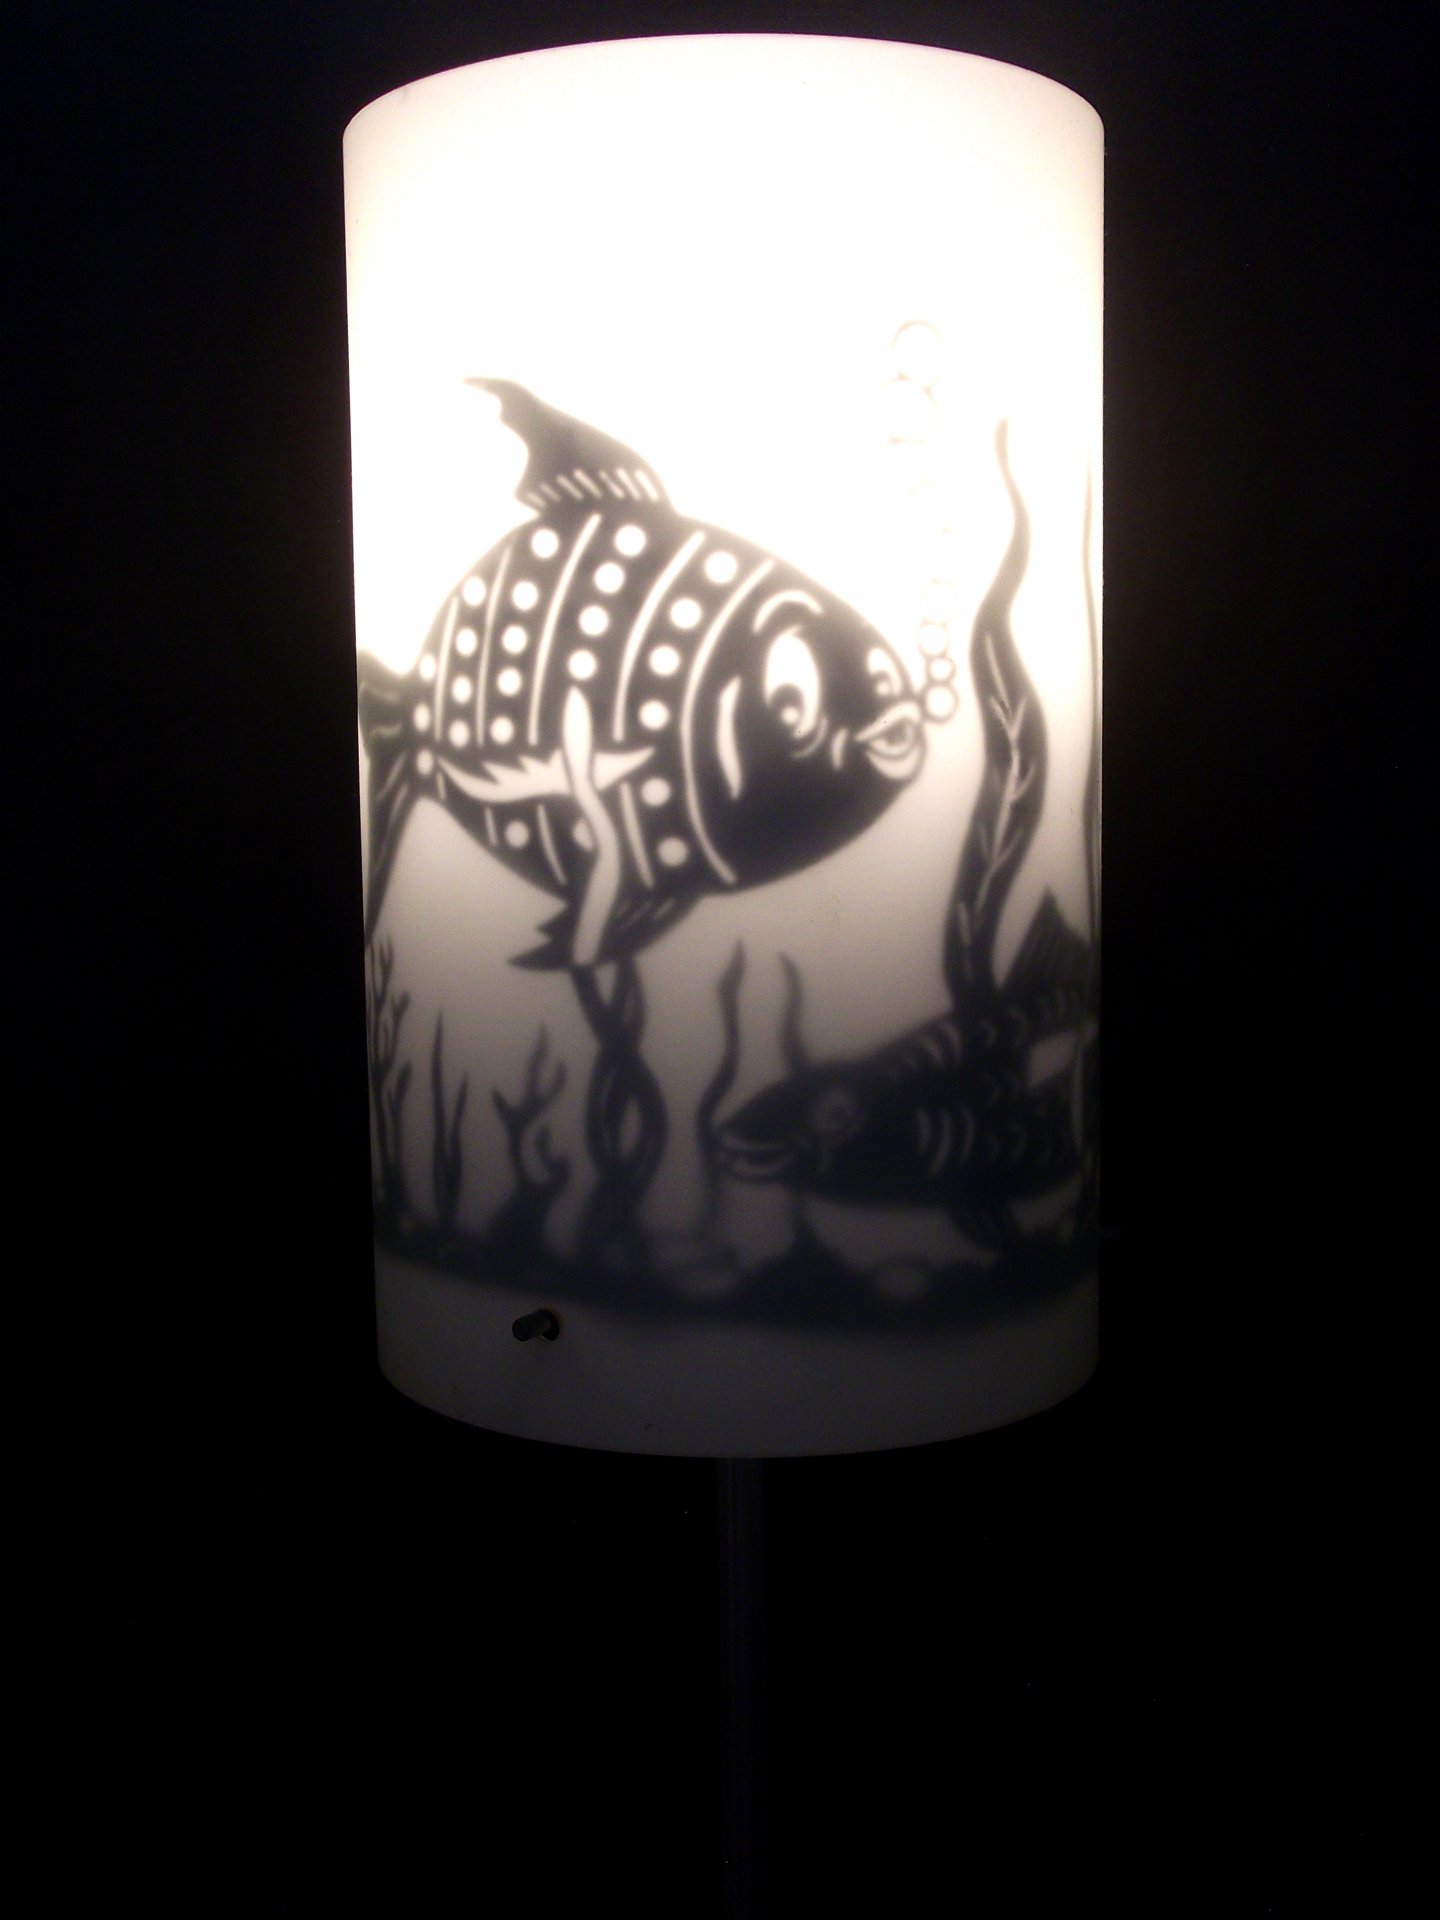 Lampe Aquarium 1 Groß.JPG